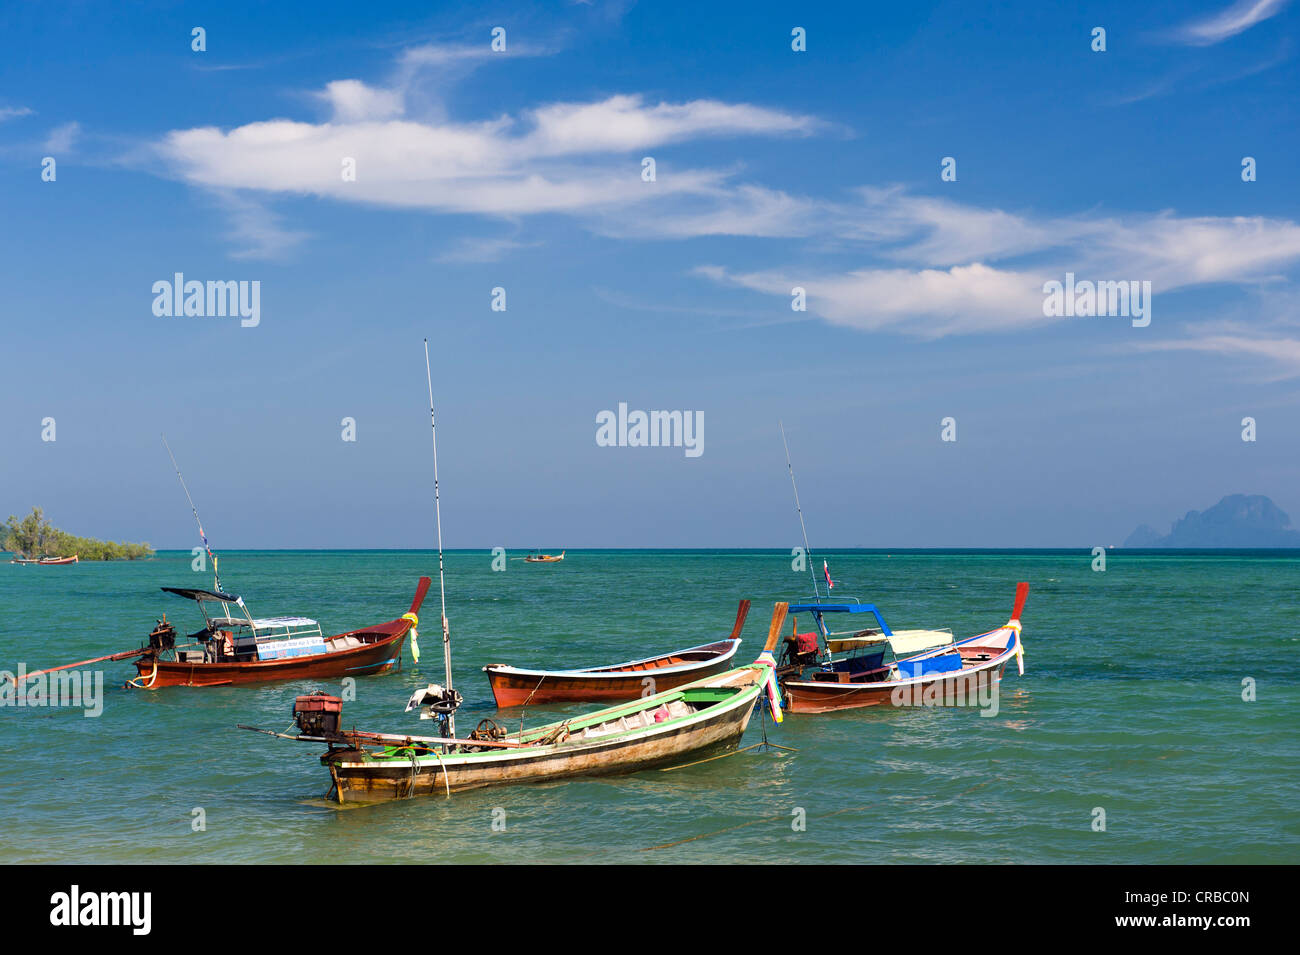 Coda lunga barche in mare, Ko Muk o Ko Mook isola, Thailandia, Sud-est asiatico Foto Stock